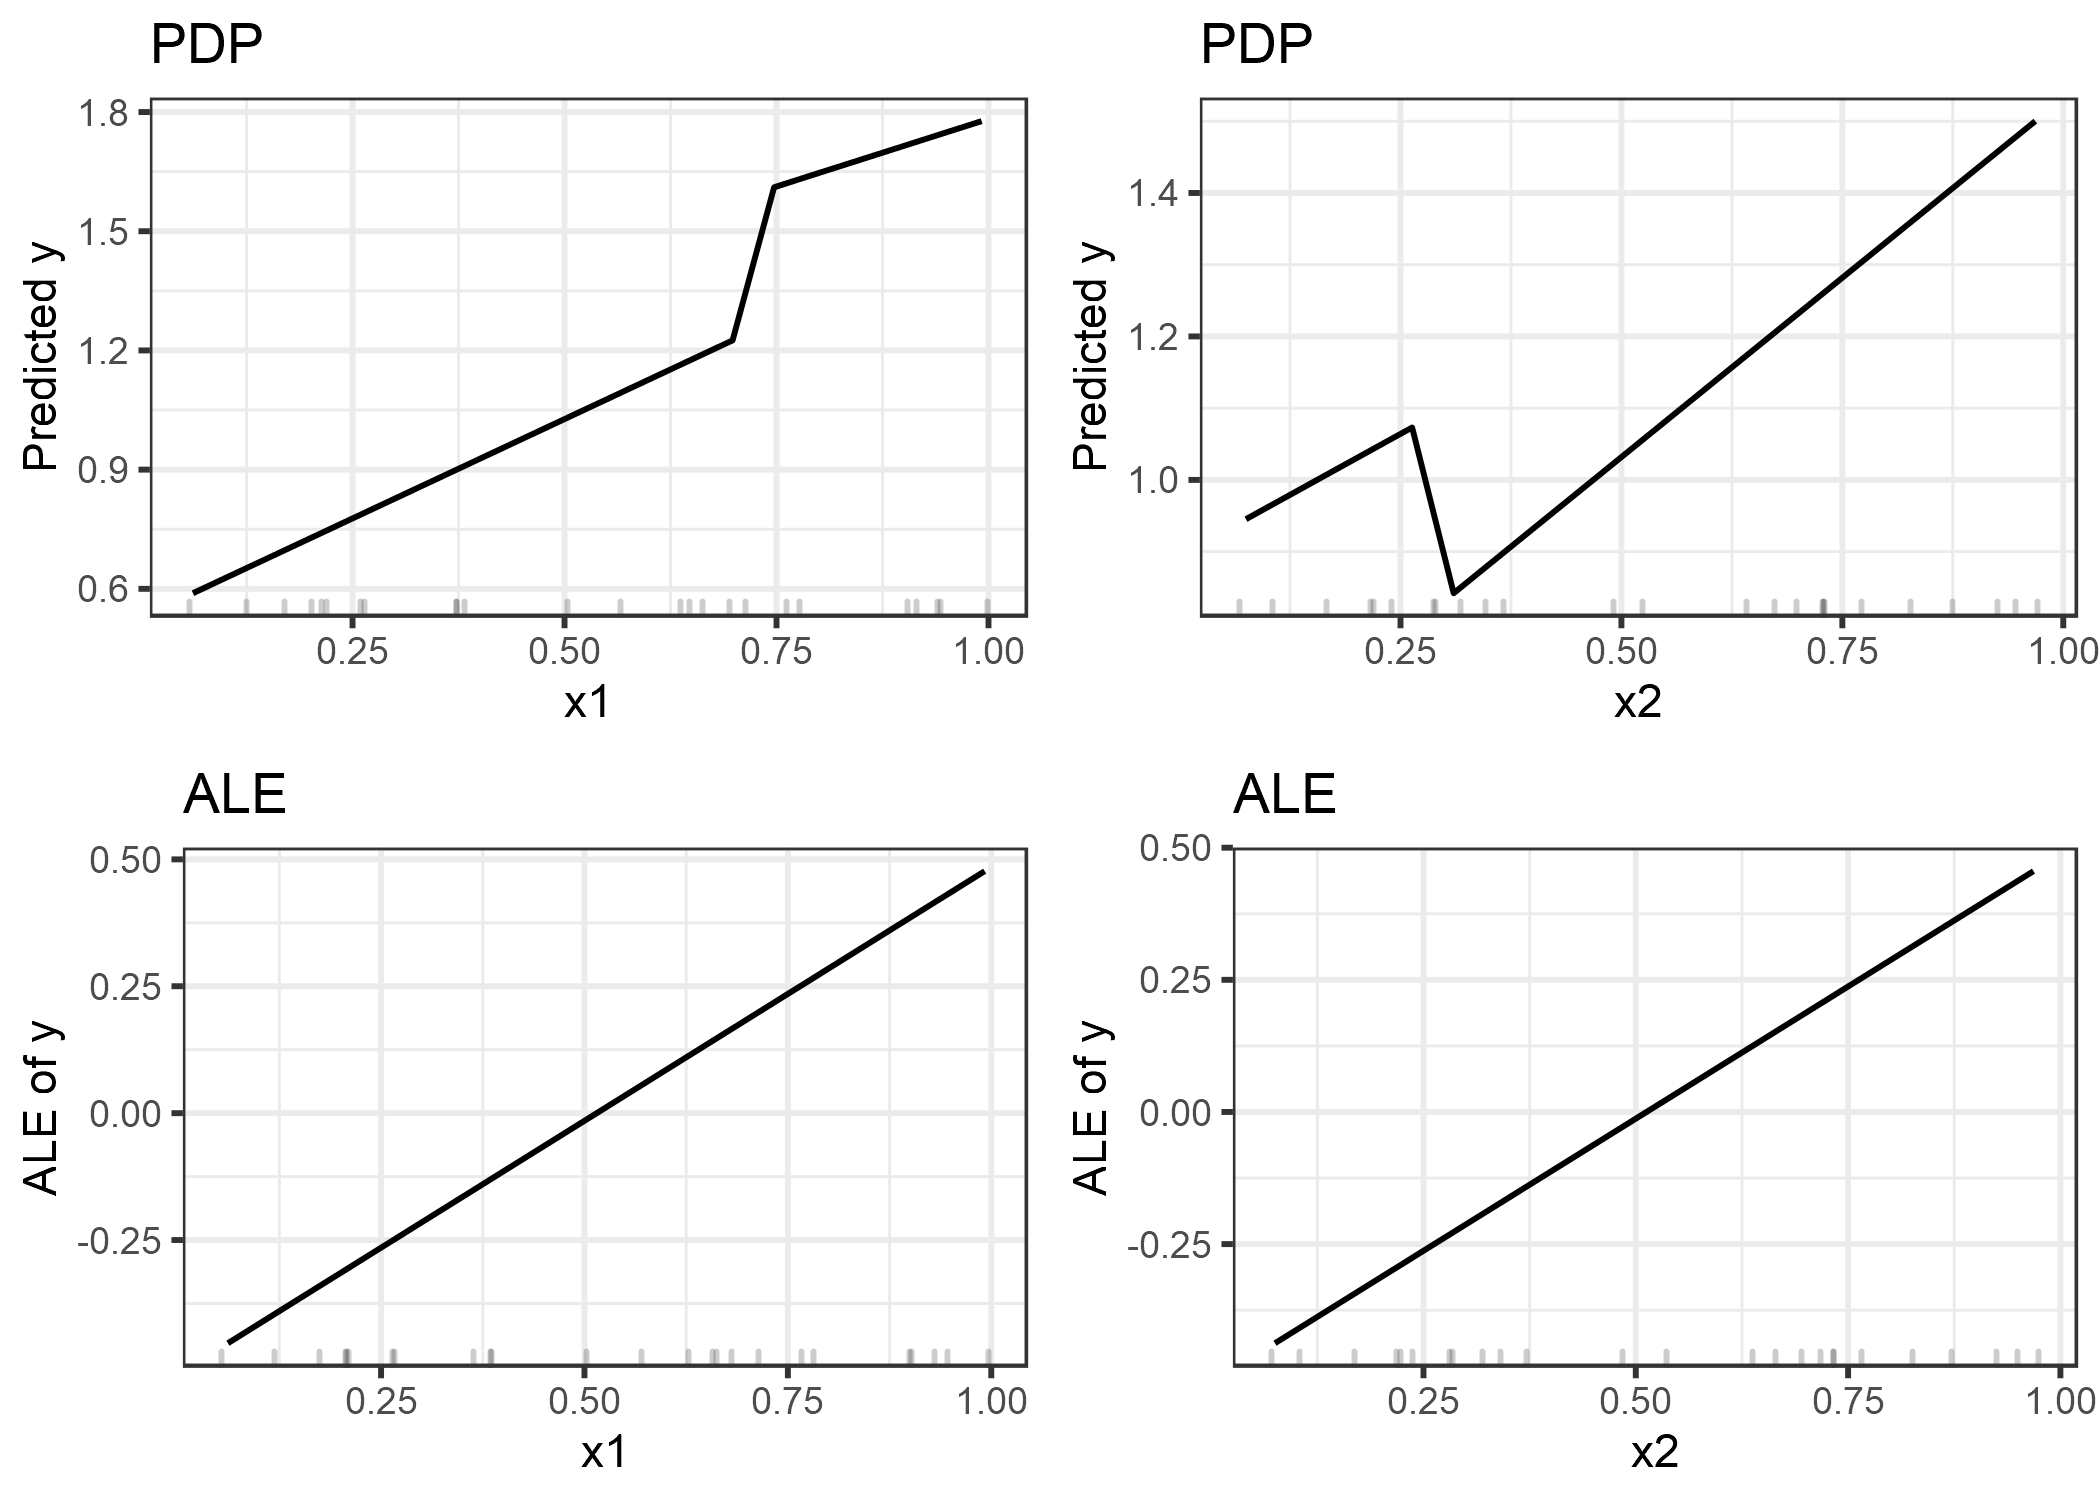 Comparación de los efectos característicos calculados con PDP (fila superior) y ALE (fila inferior). Las estimaciones de PDP están influenciadas por el comportamiento extraño del modelo externo la distribución de datos (saltos pronunciados en las gráficas). Las gráficas ALE identifican correctamente que el modelo de aprendizaje automático tiene una relación lineal entre las características y la predicción, ignorando las áreas sin datos.